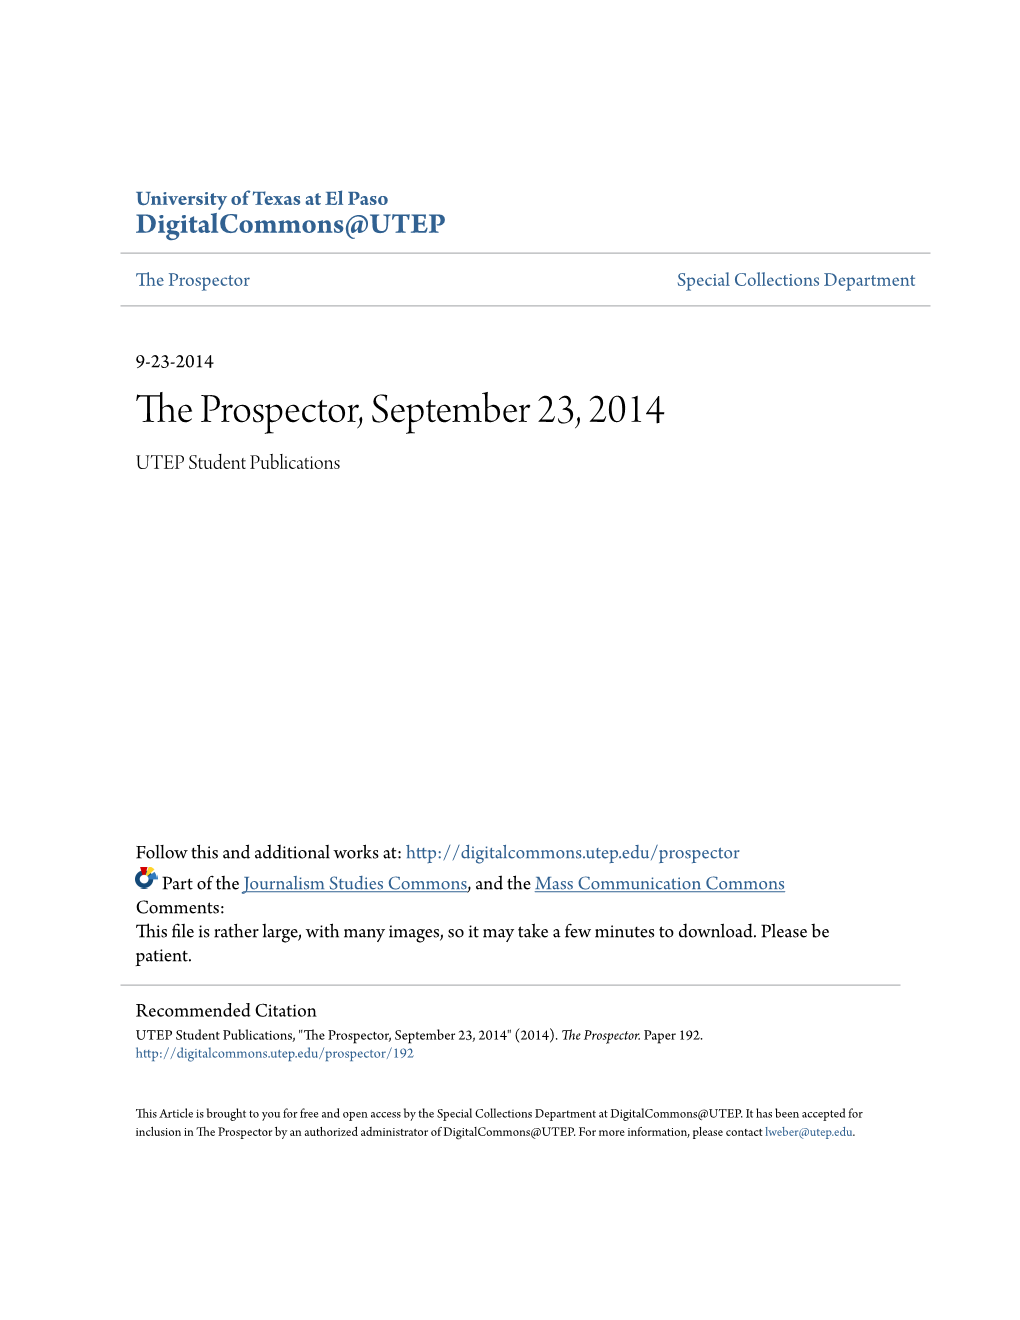 The Prospector, September 23, 2014